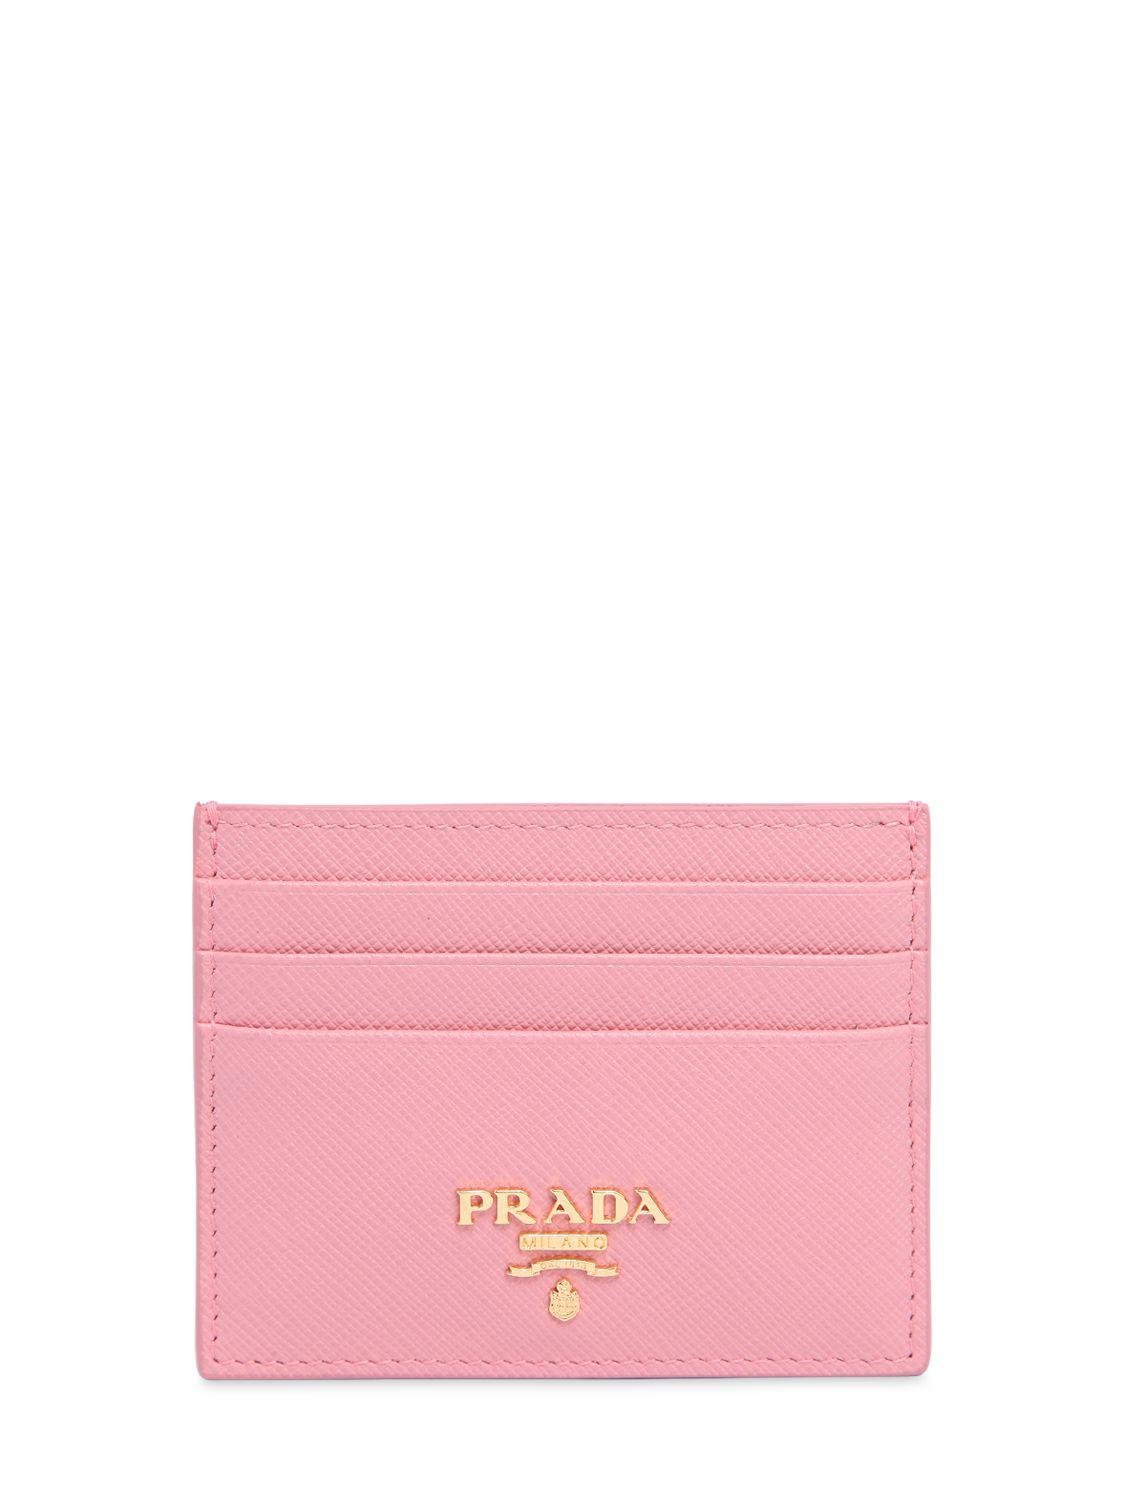 Prada Pink Saffiano Card Holder 